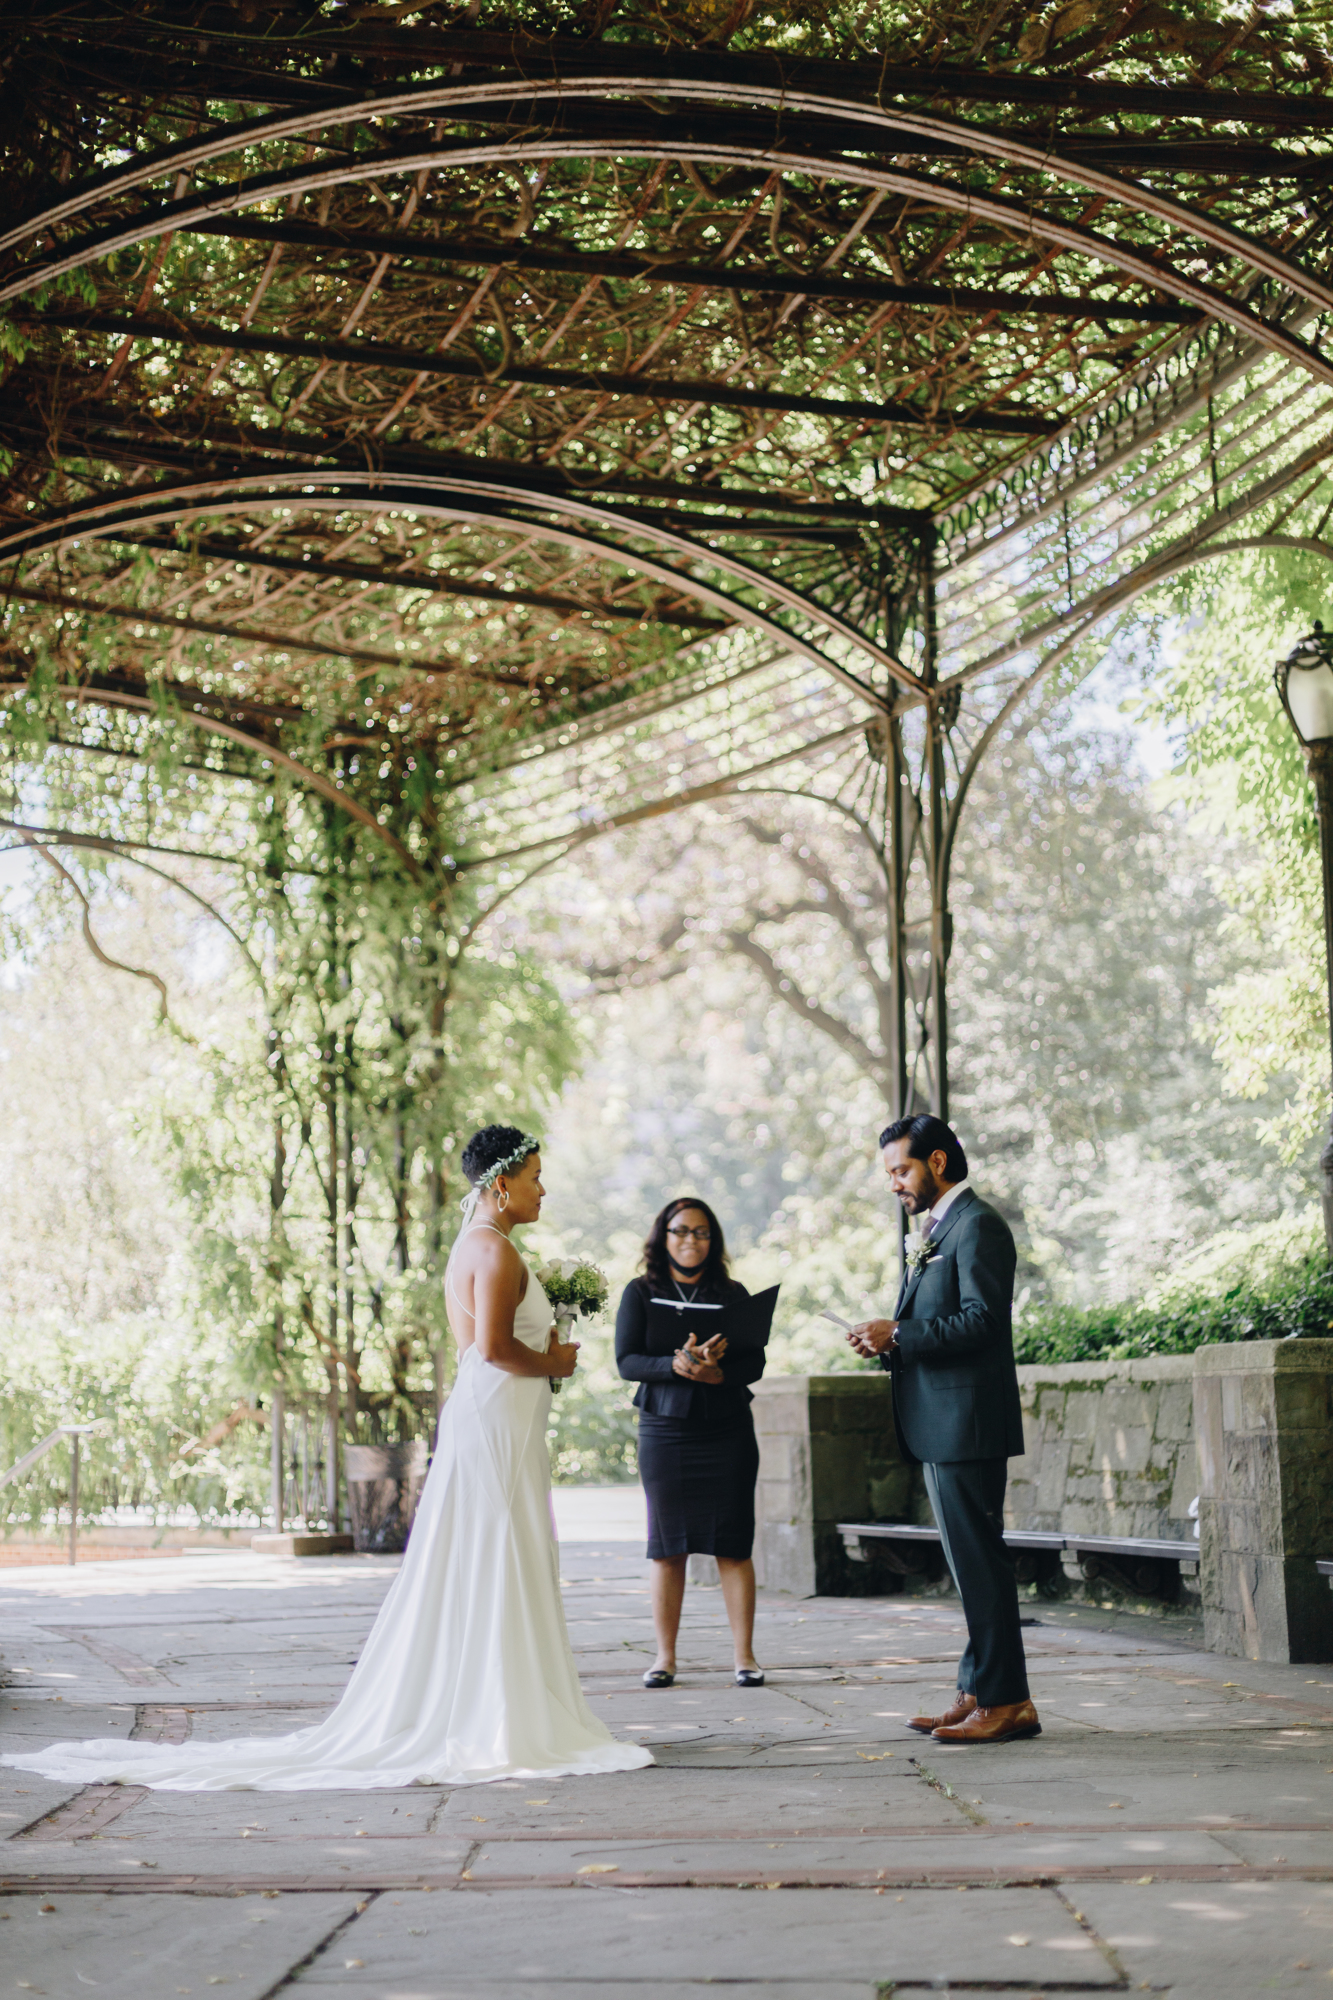 Conservatory Garden wedding in North Central Park